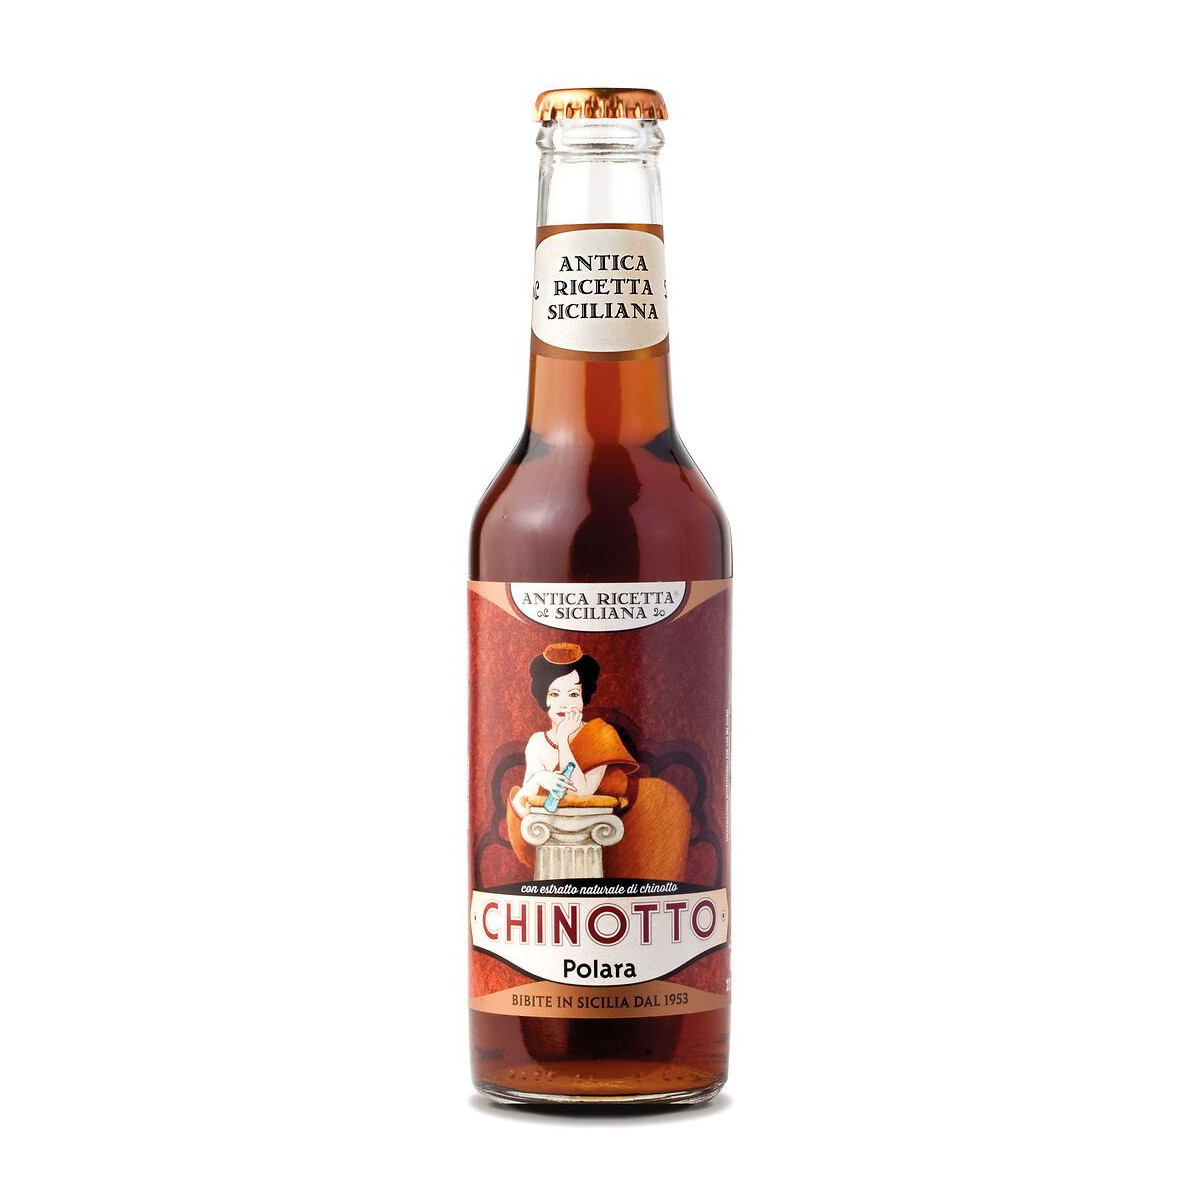 Napój Chinotto - włoski napój bezalkoholowy z gorzkich pomarańczy i delikatnych aromatów. Gorzki smak, orzeźwiająca świeżość.